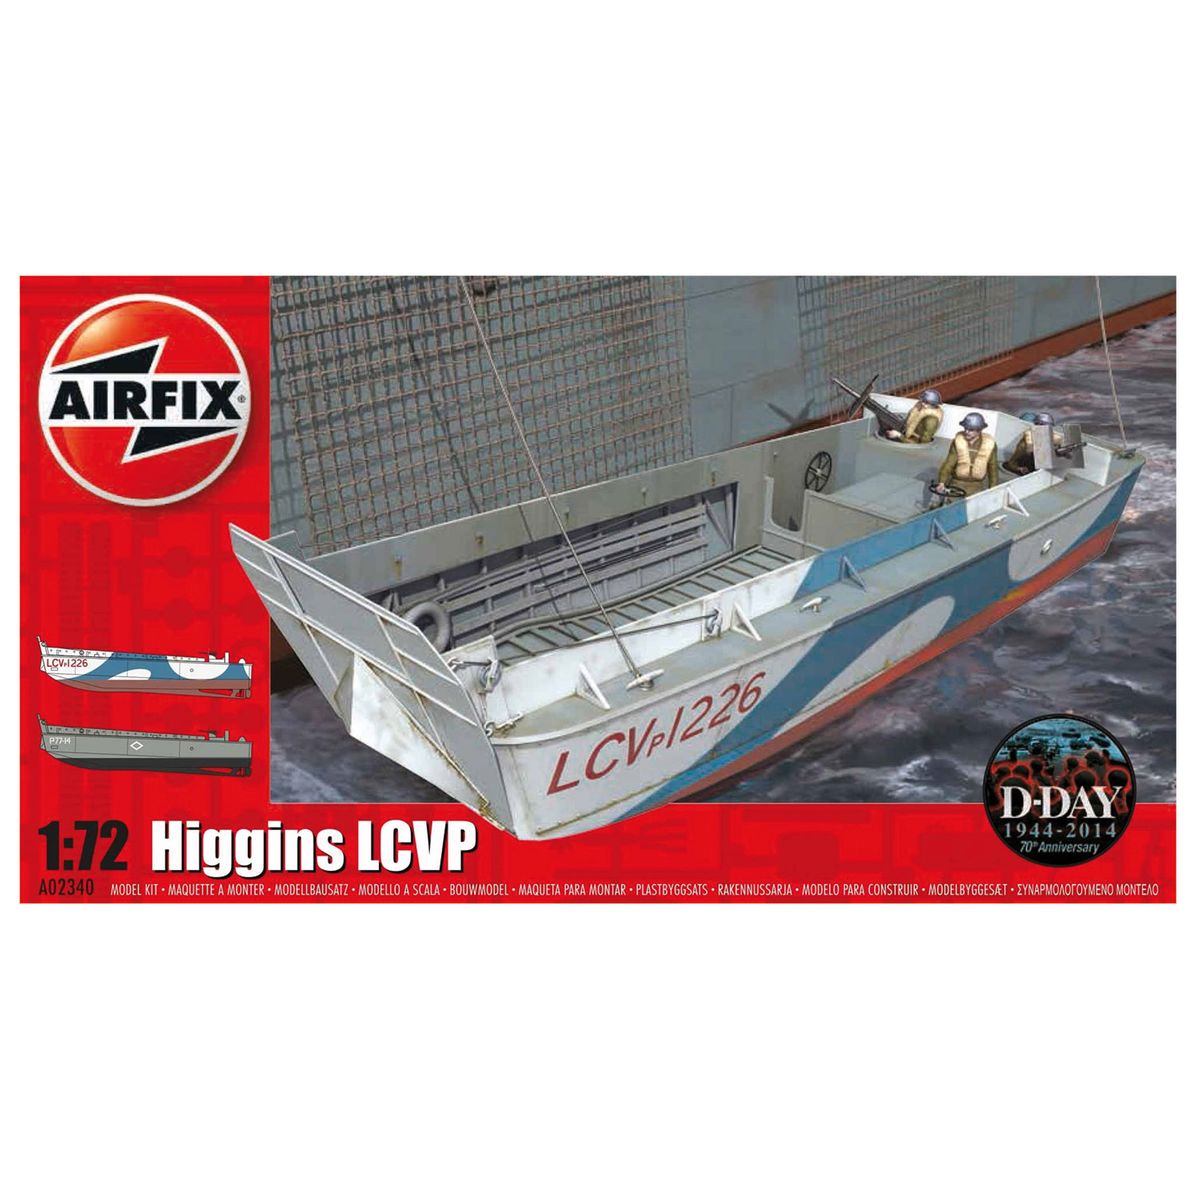 Maquette bateau : higgins lcvp : 1:72 Airfix